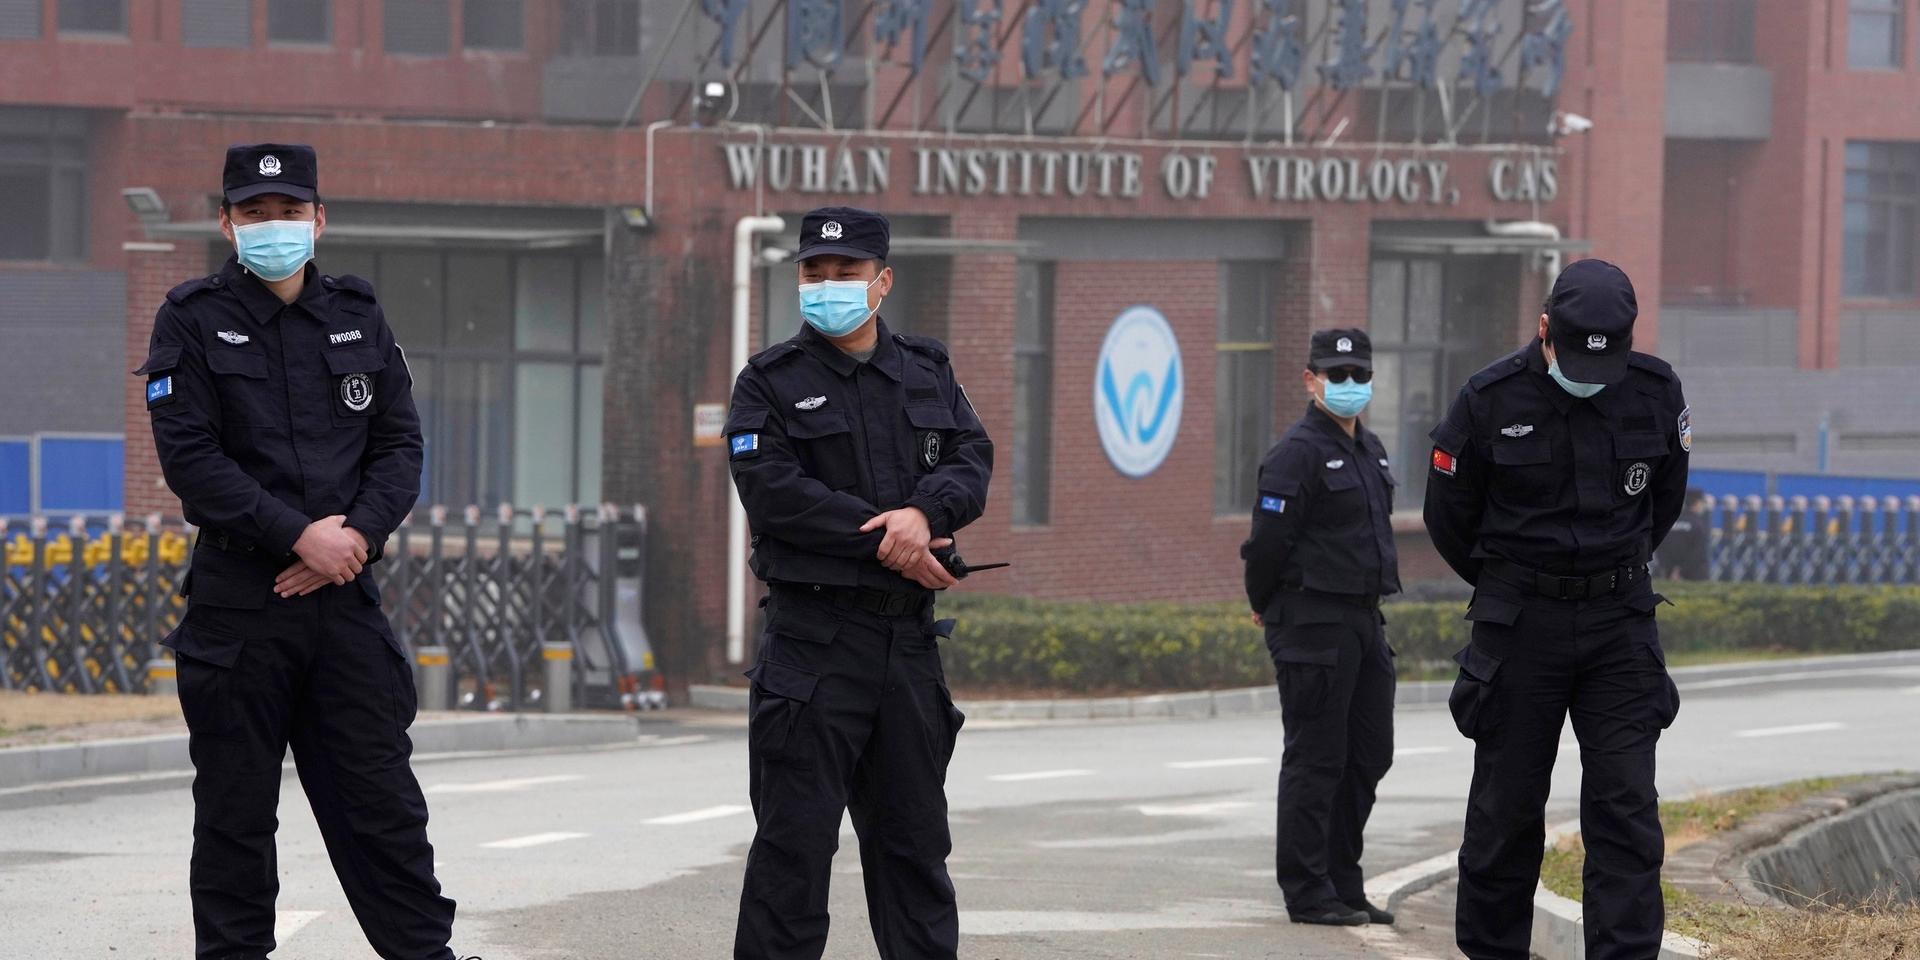 Valter utanför Wuhans virologiska institut.